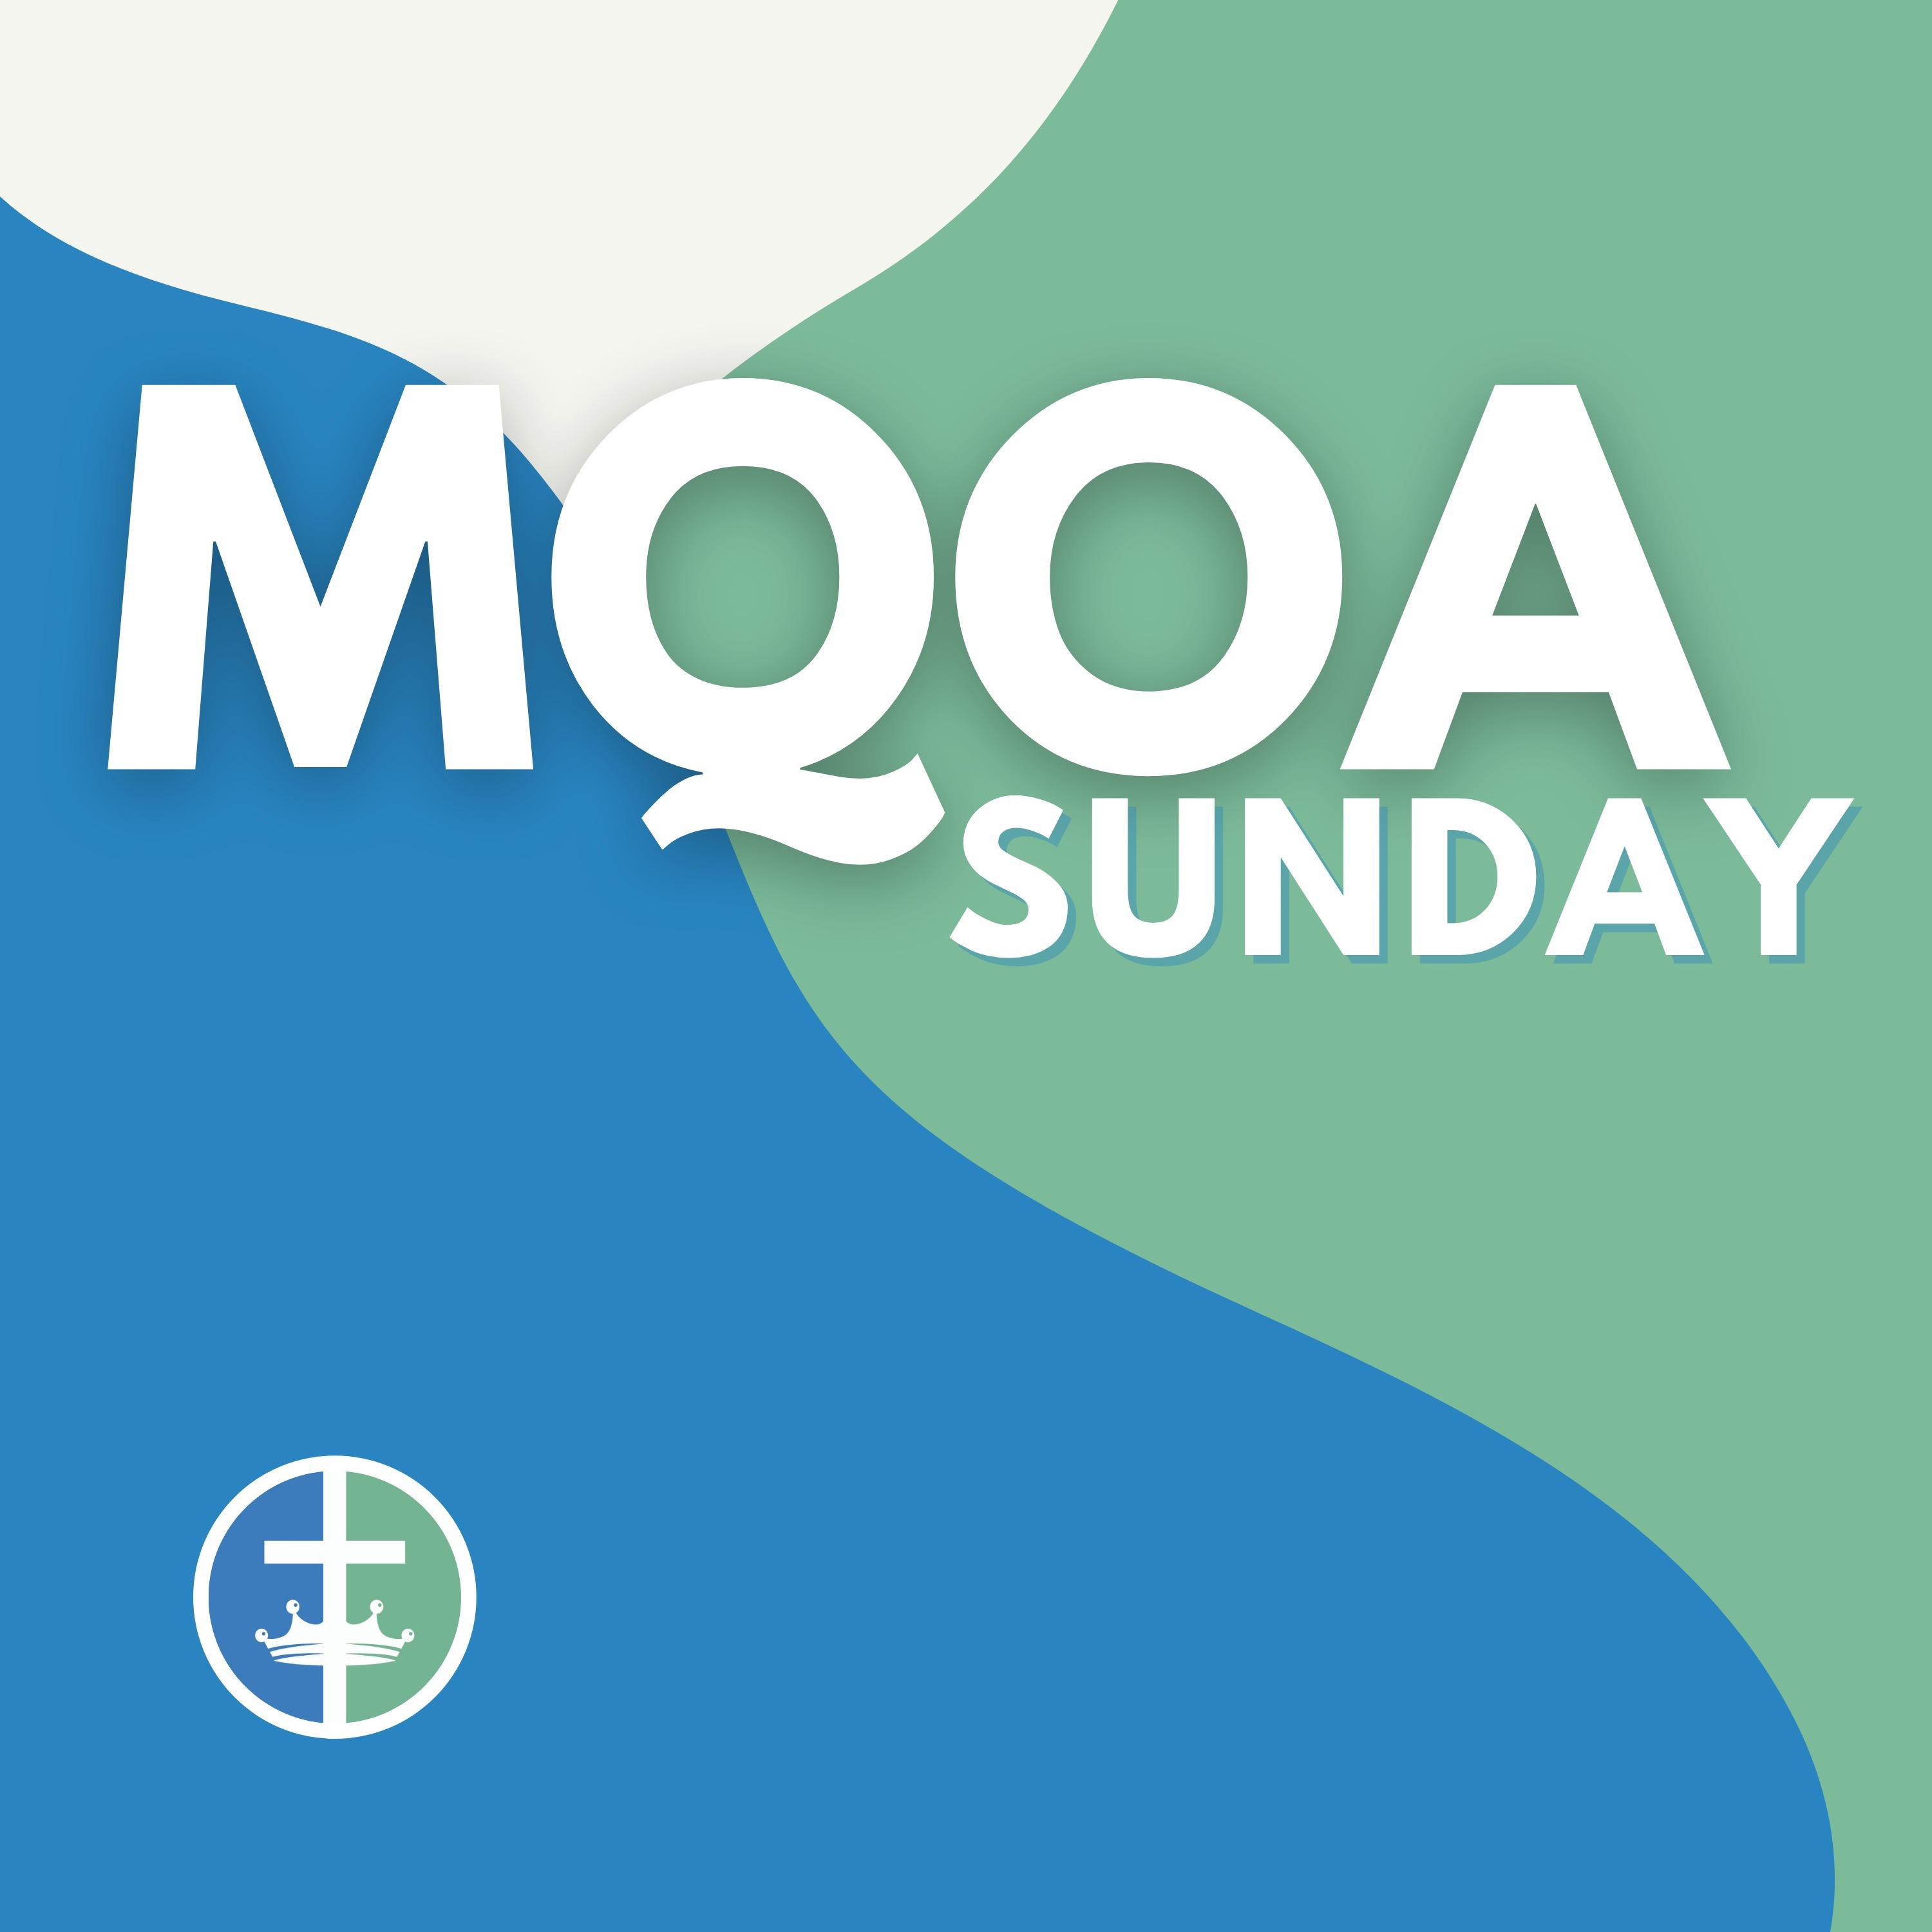 MQOA Sunday